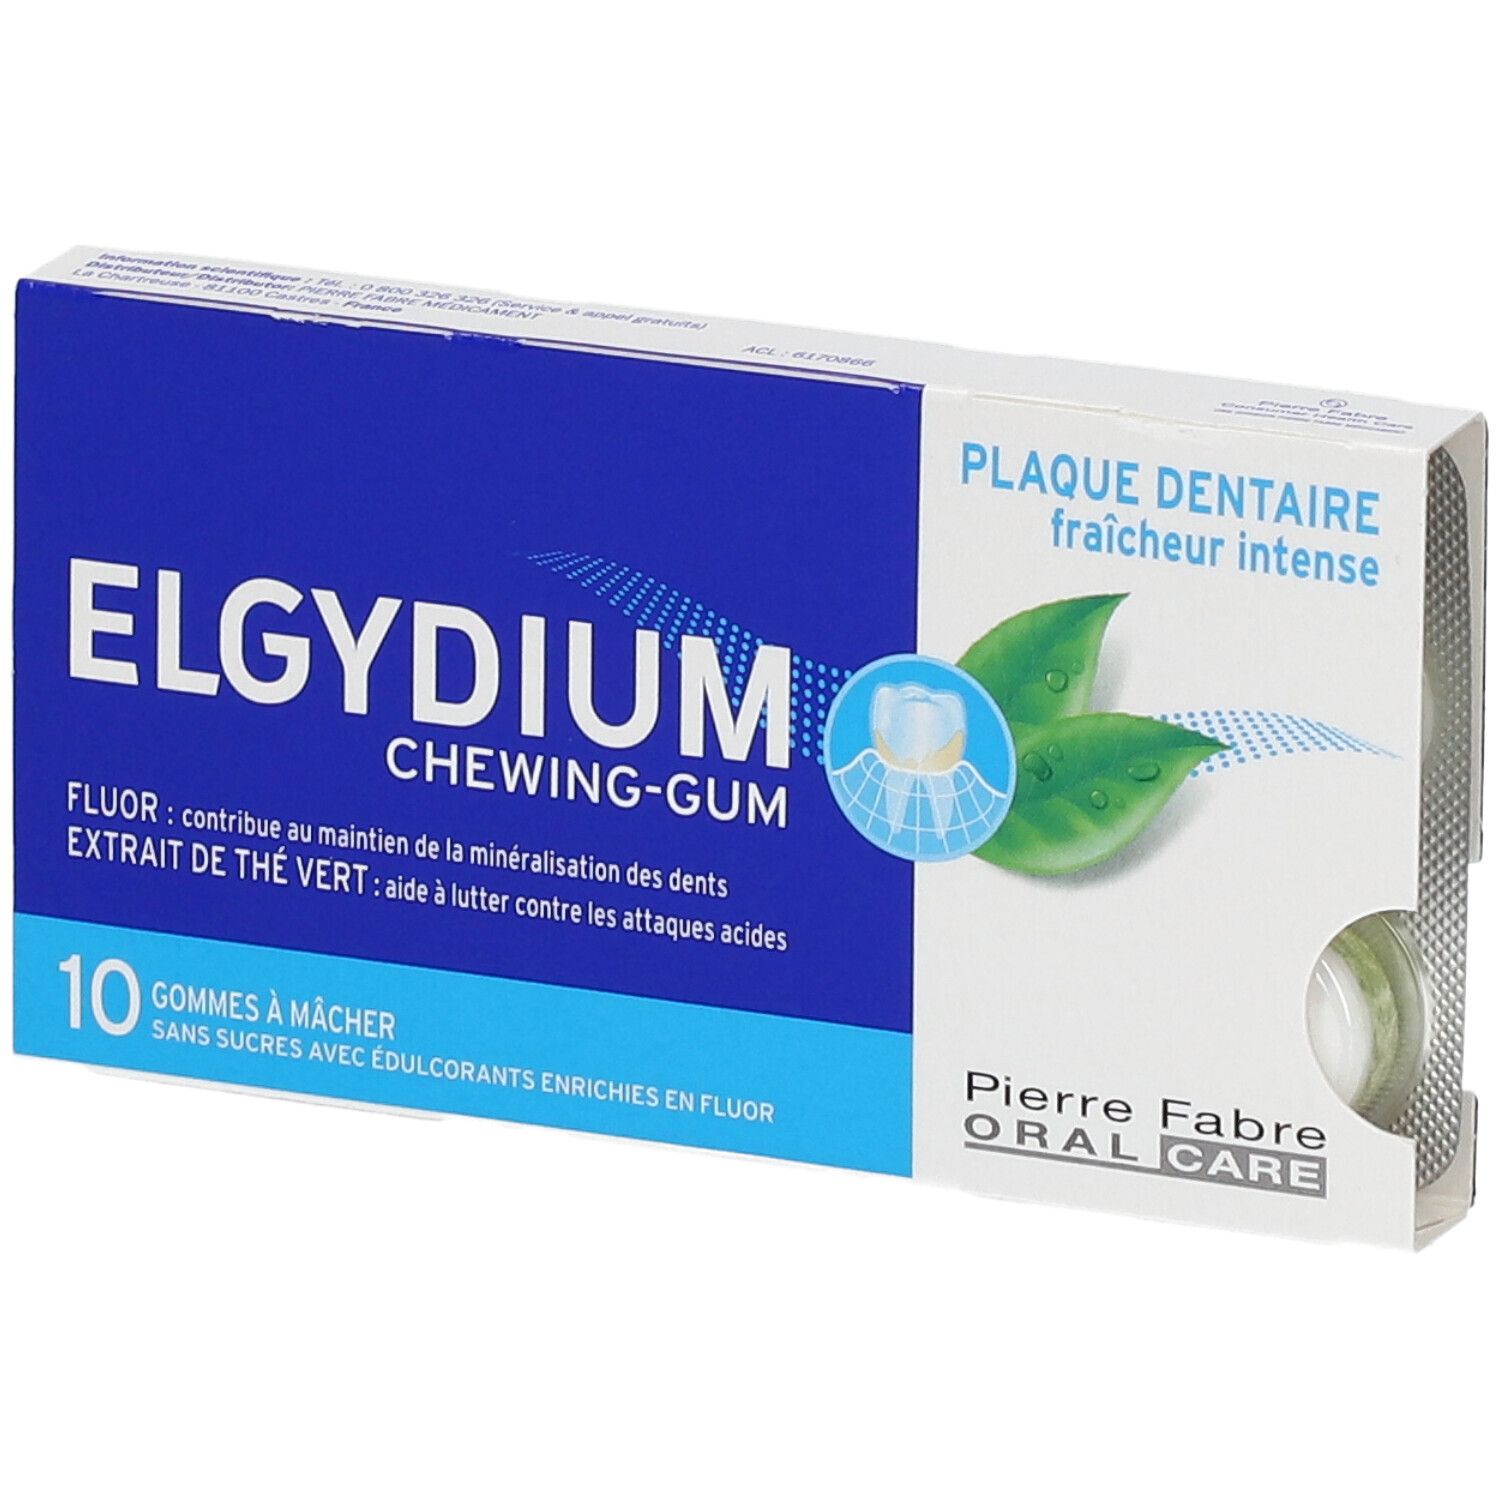 Elgydium Chewing-Gum Plaque Dentaire